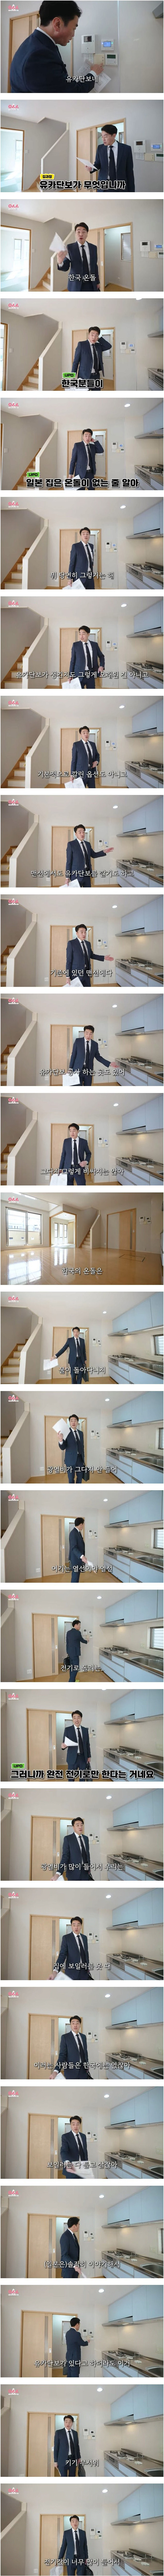 부동산 업자가 말하는 일본 집 온돌과 한국의 차이점